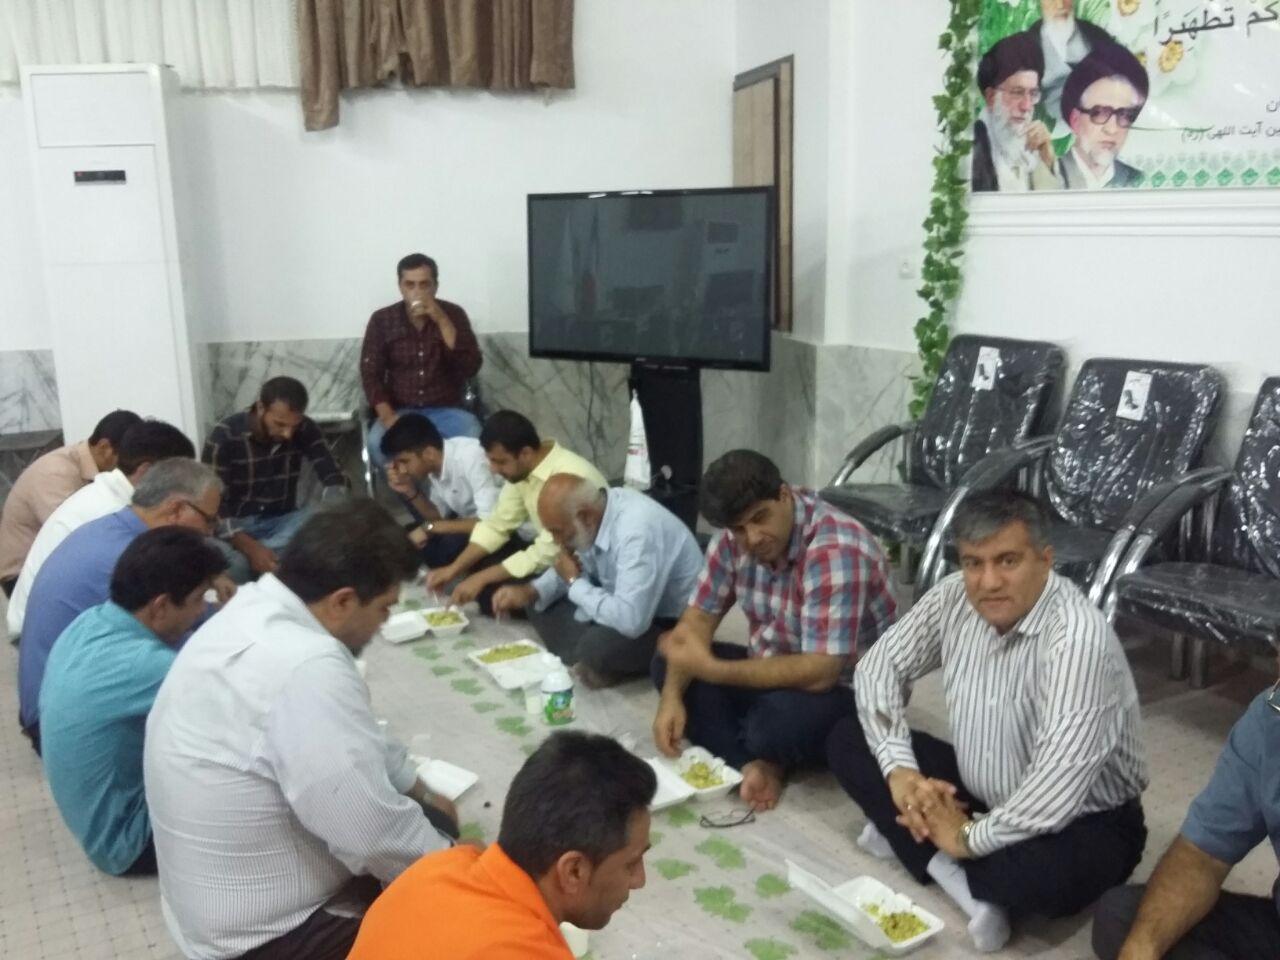 عکس اطعام روز عید غدیر در کانون فرهنگی هنری سلاله پاکان